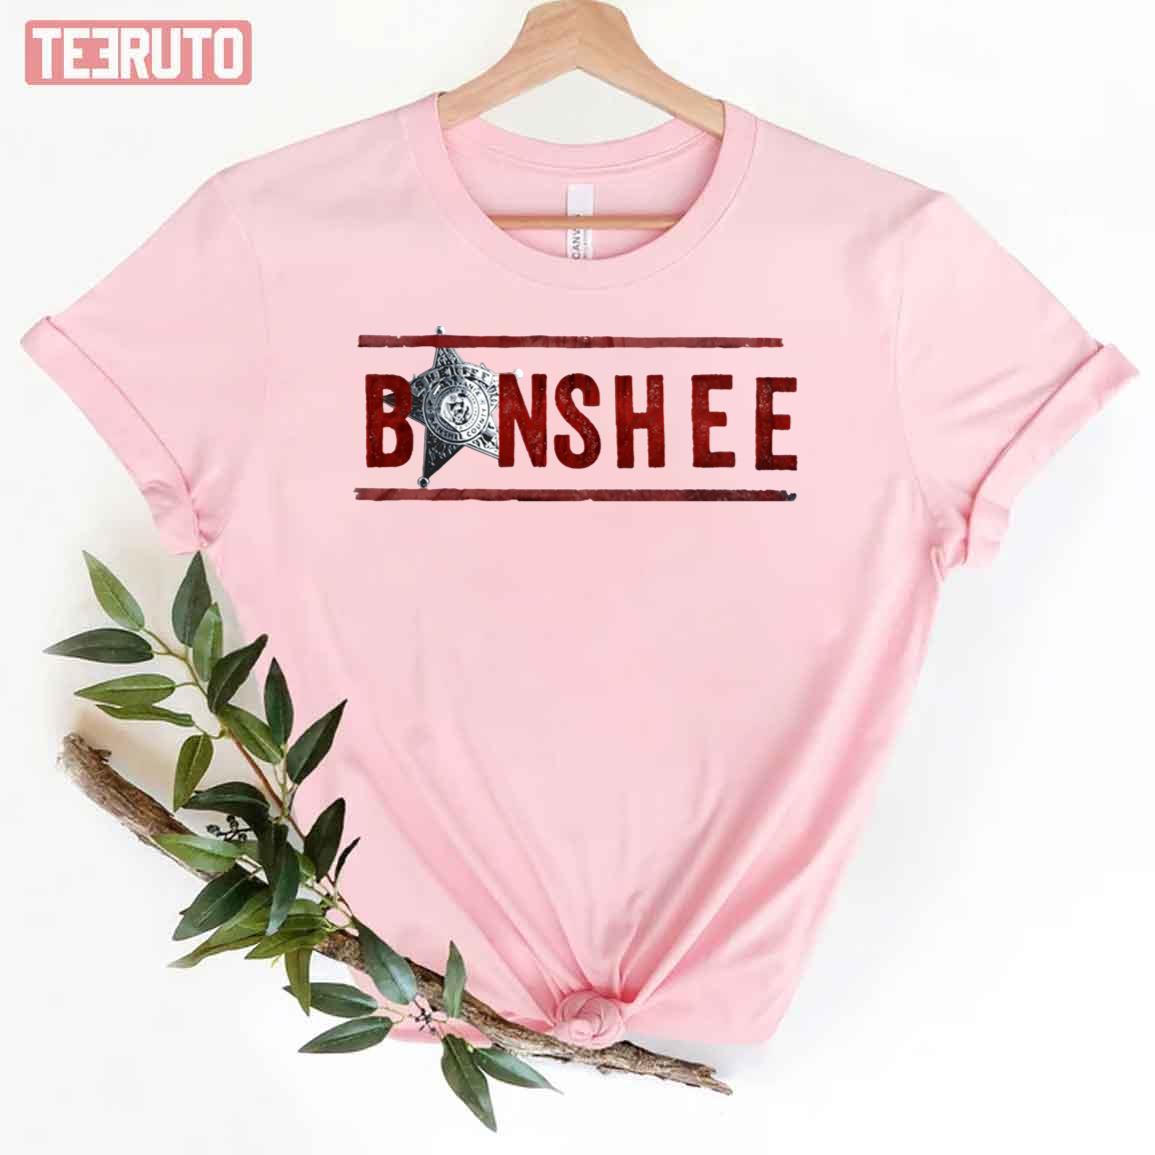 Banshee American Action Drama Tv Series Unisex T-Shirt